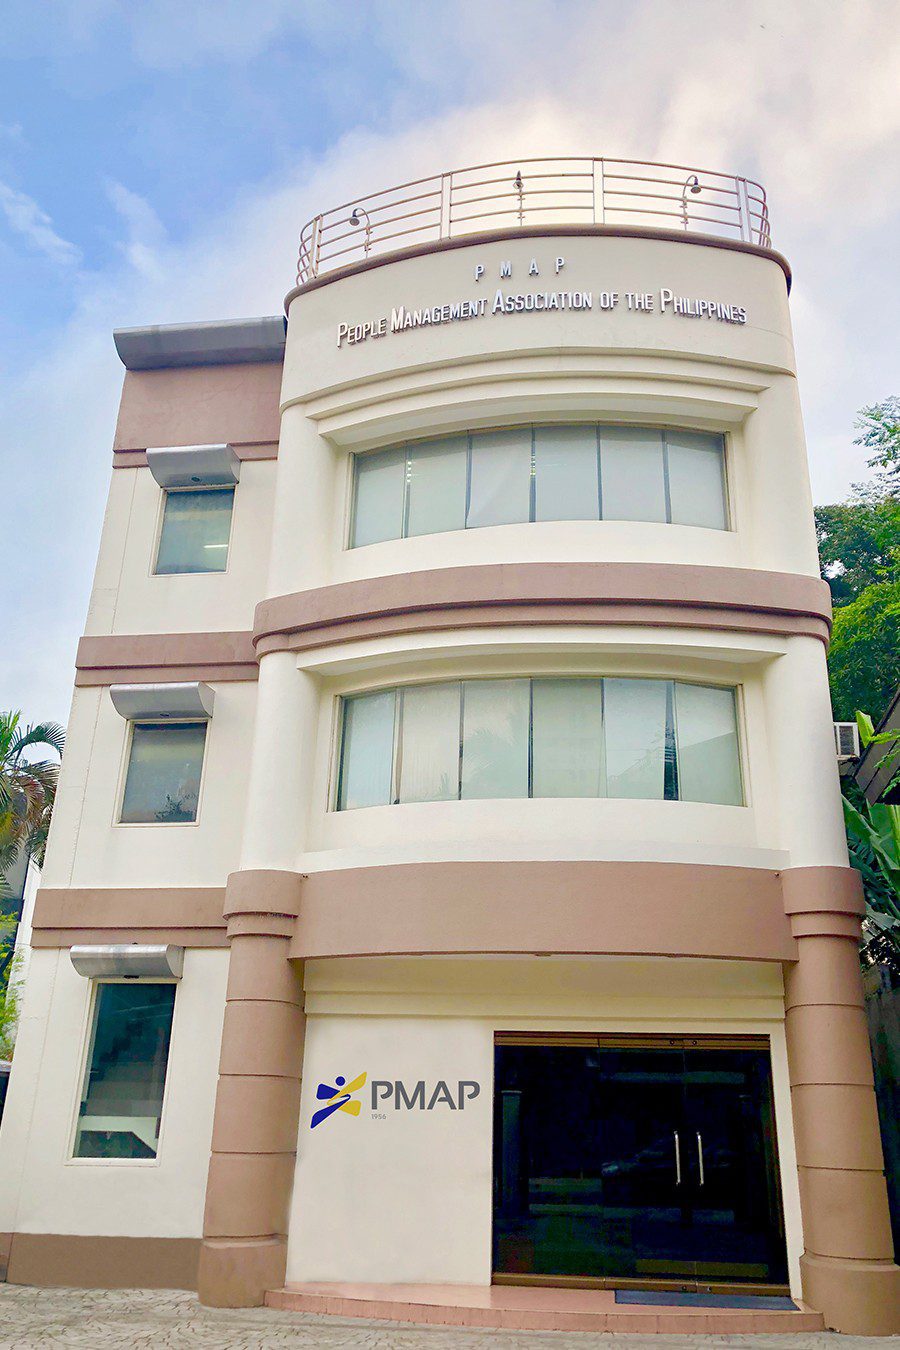 PMAP Building